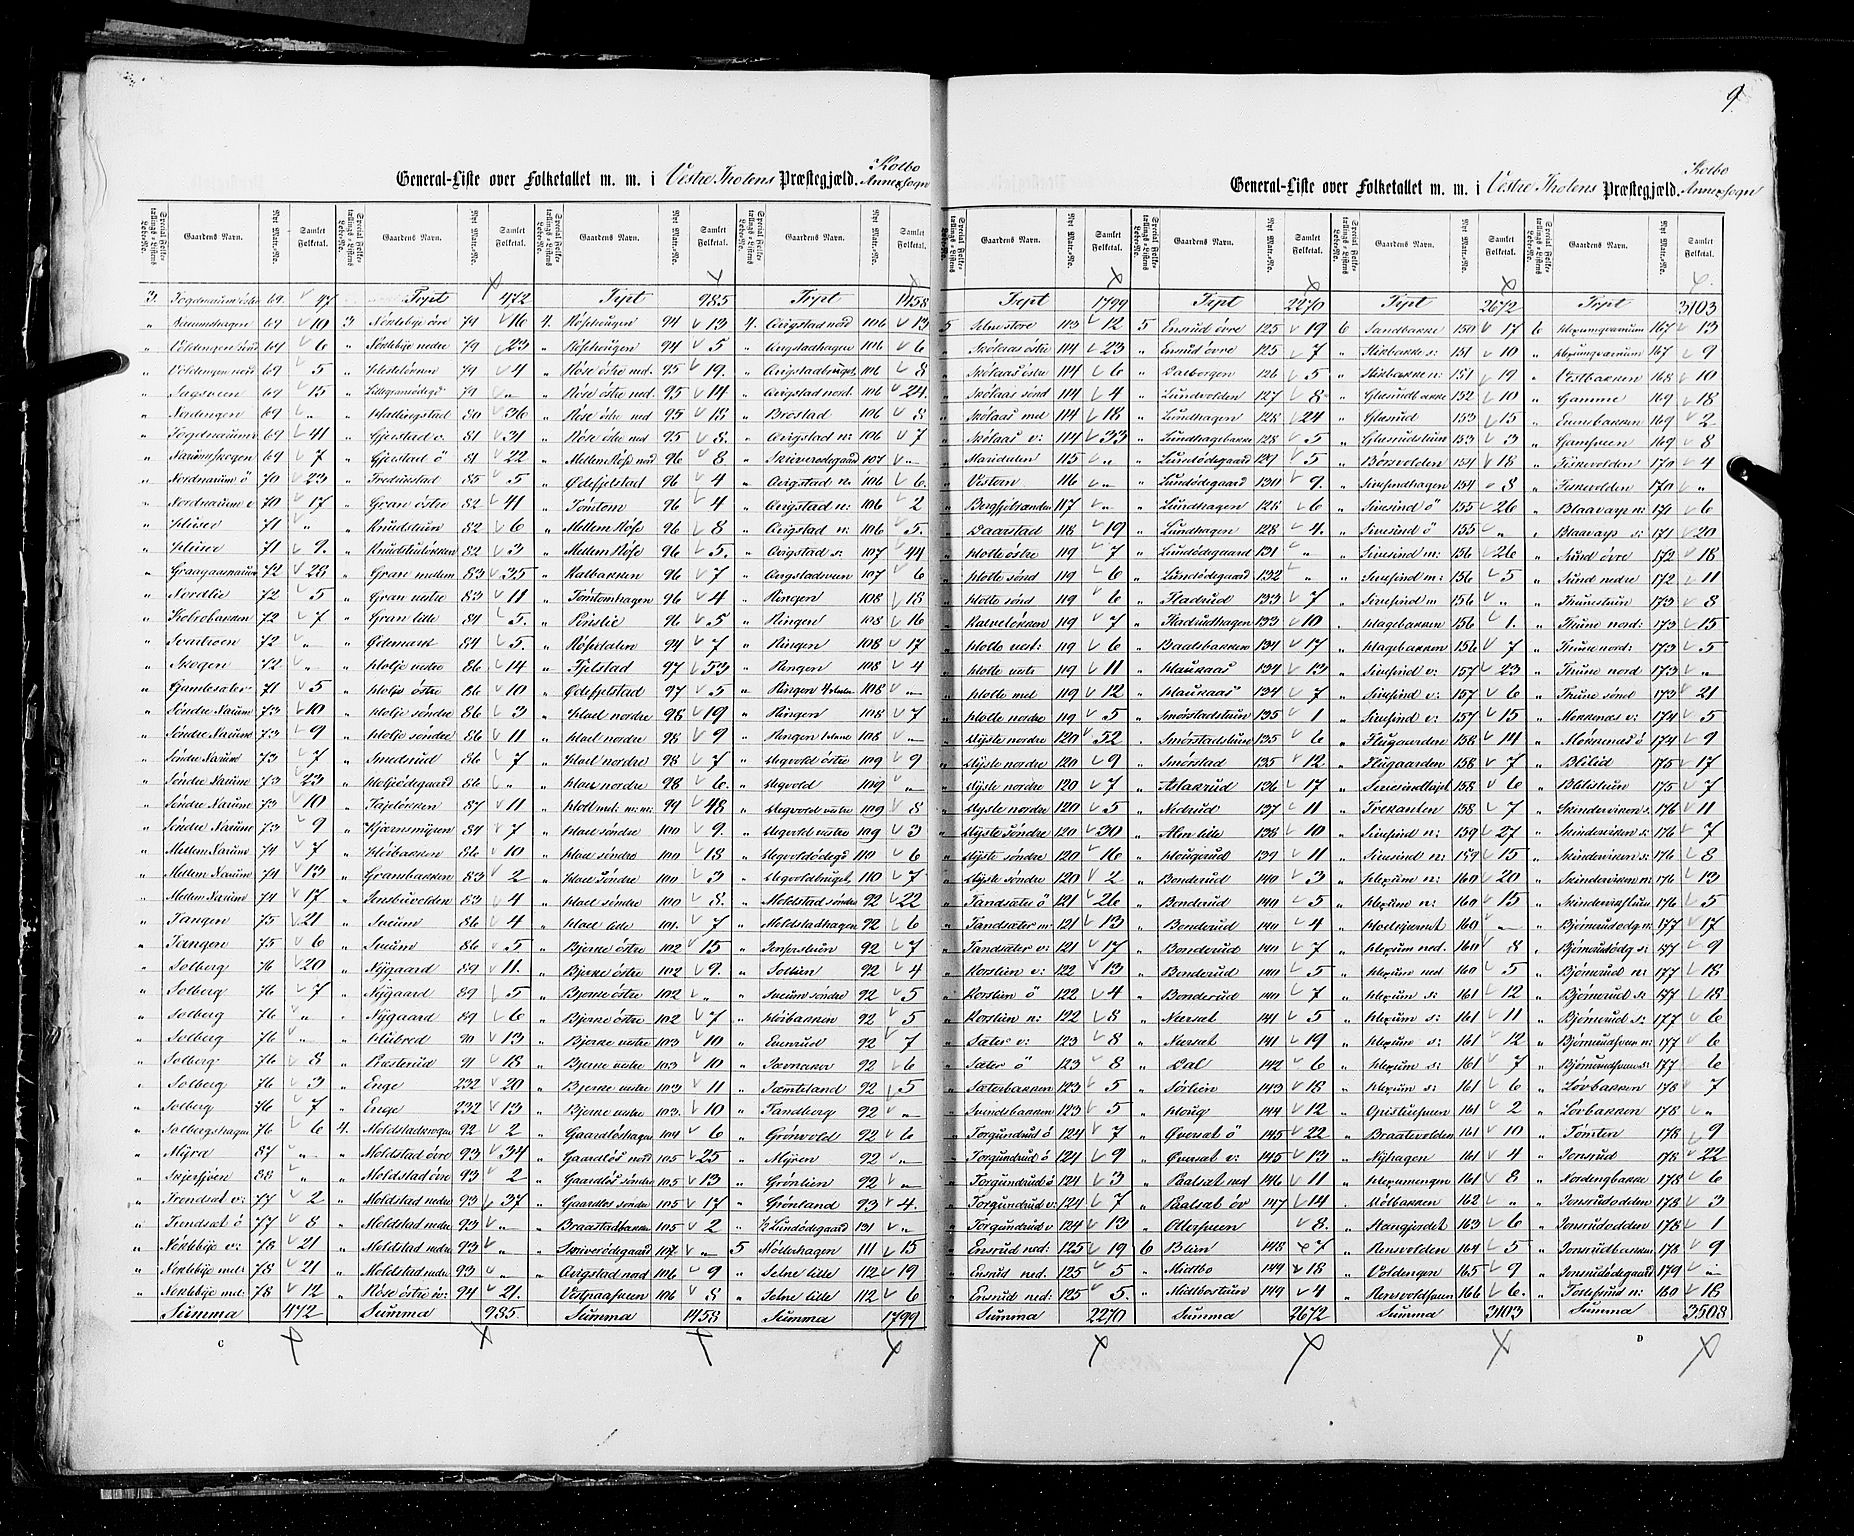 RA, Census 1855, vol. 2: Kristians amt, Buskerud amt og Jarlsberg og Larvik amt, 1855, p. 9